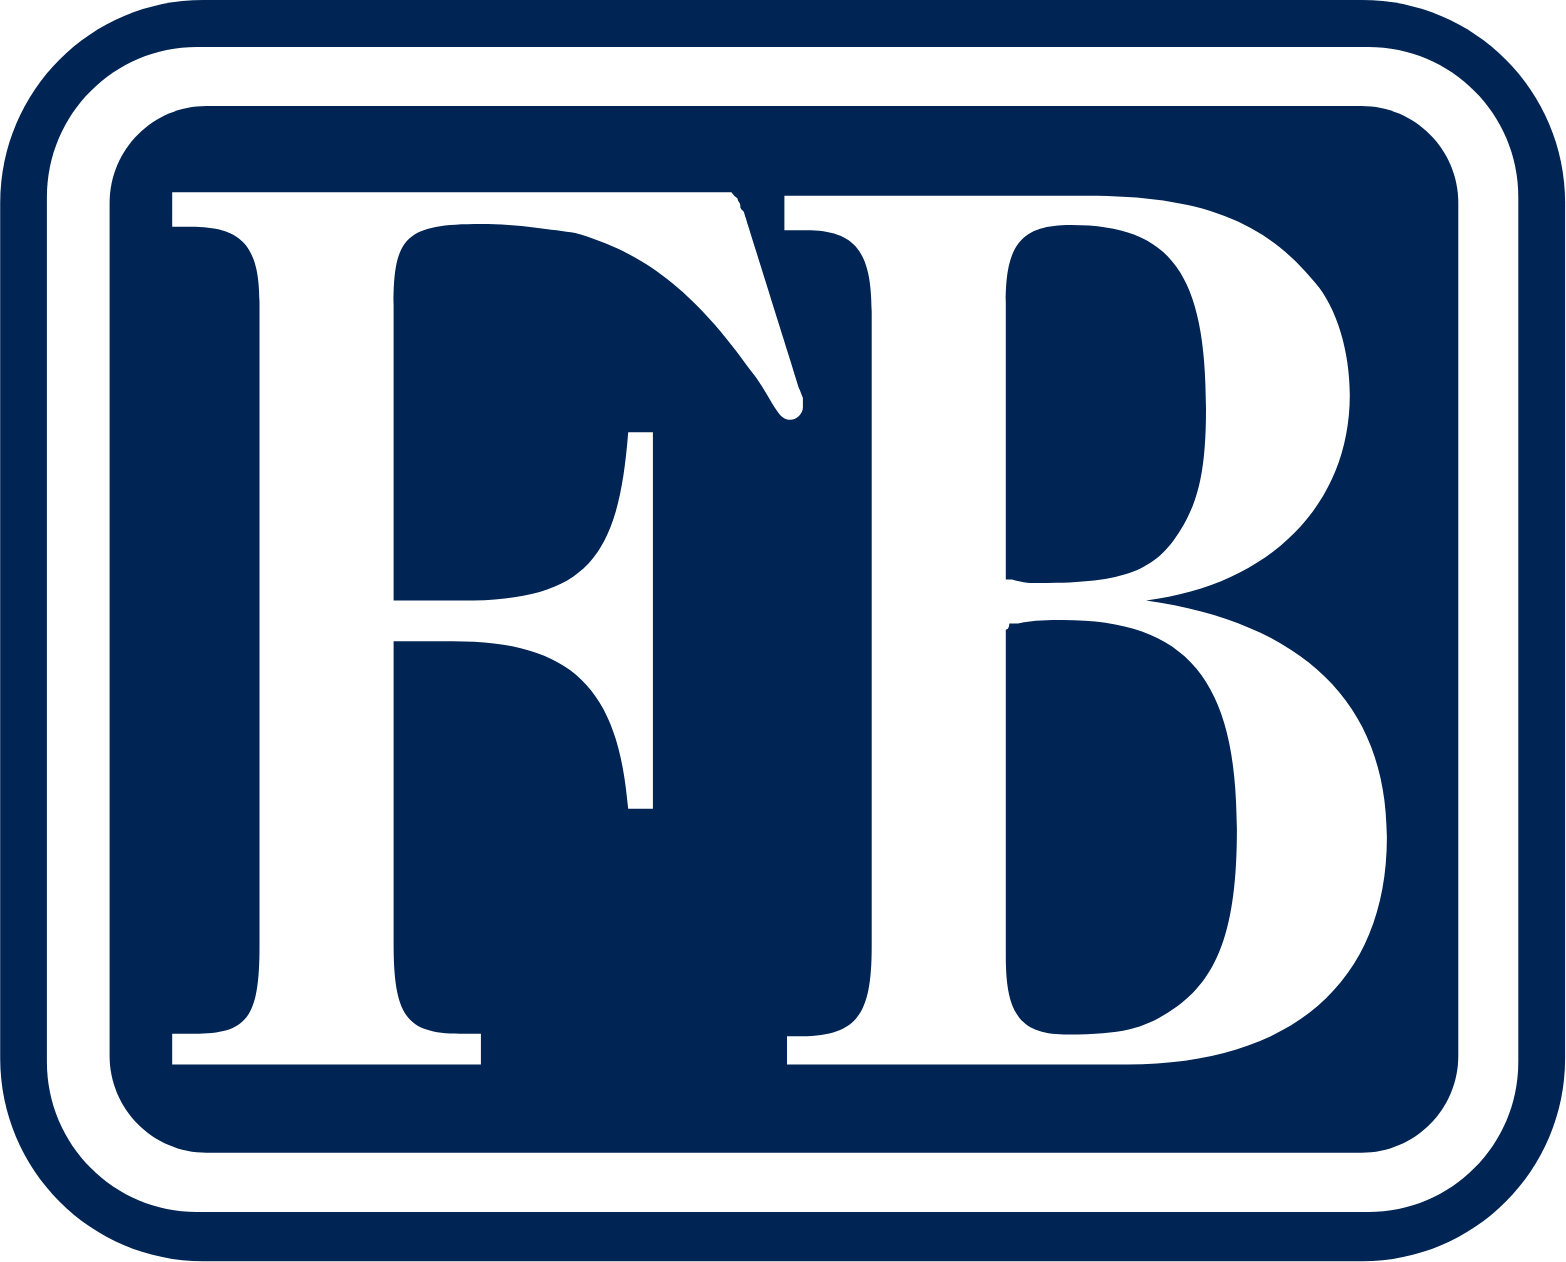 FB Financial logo (transparent PNG)